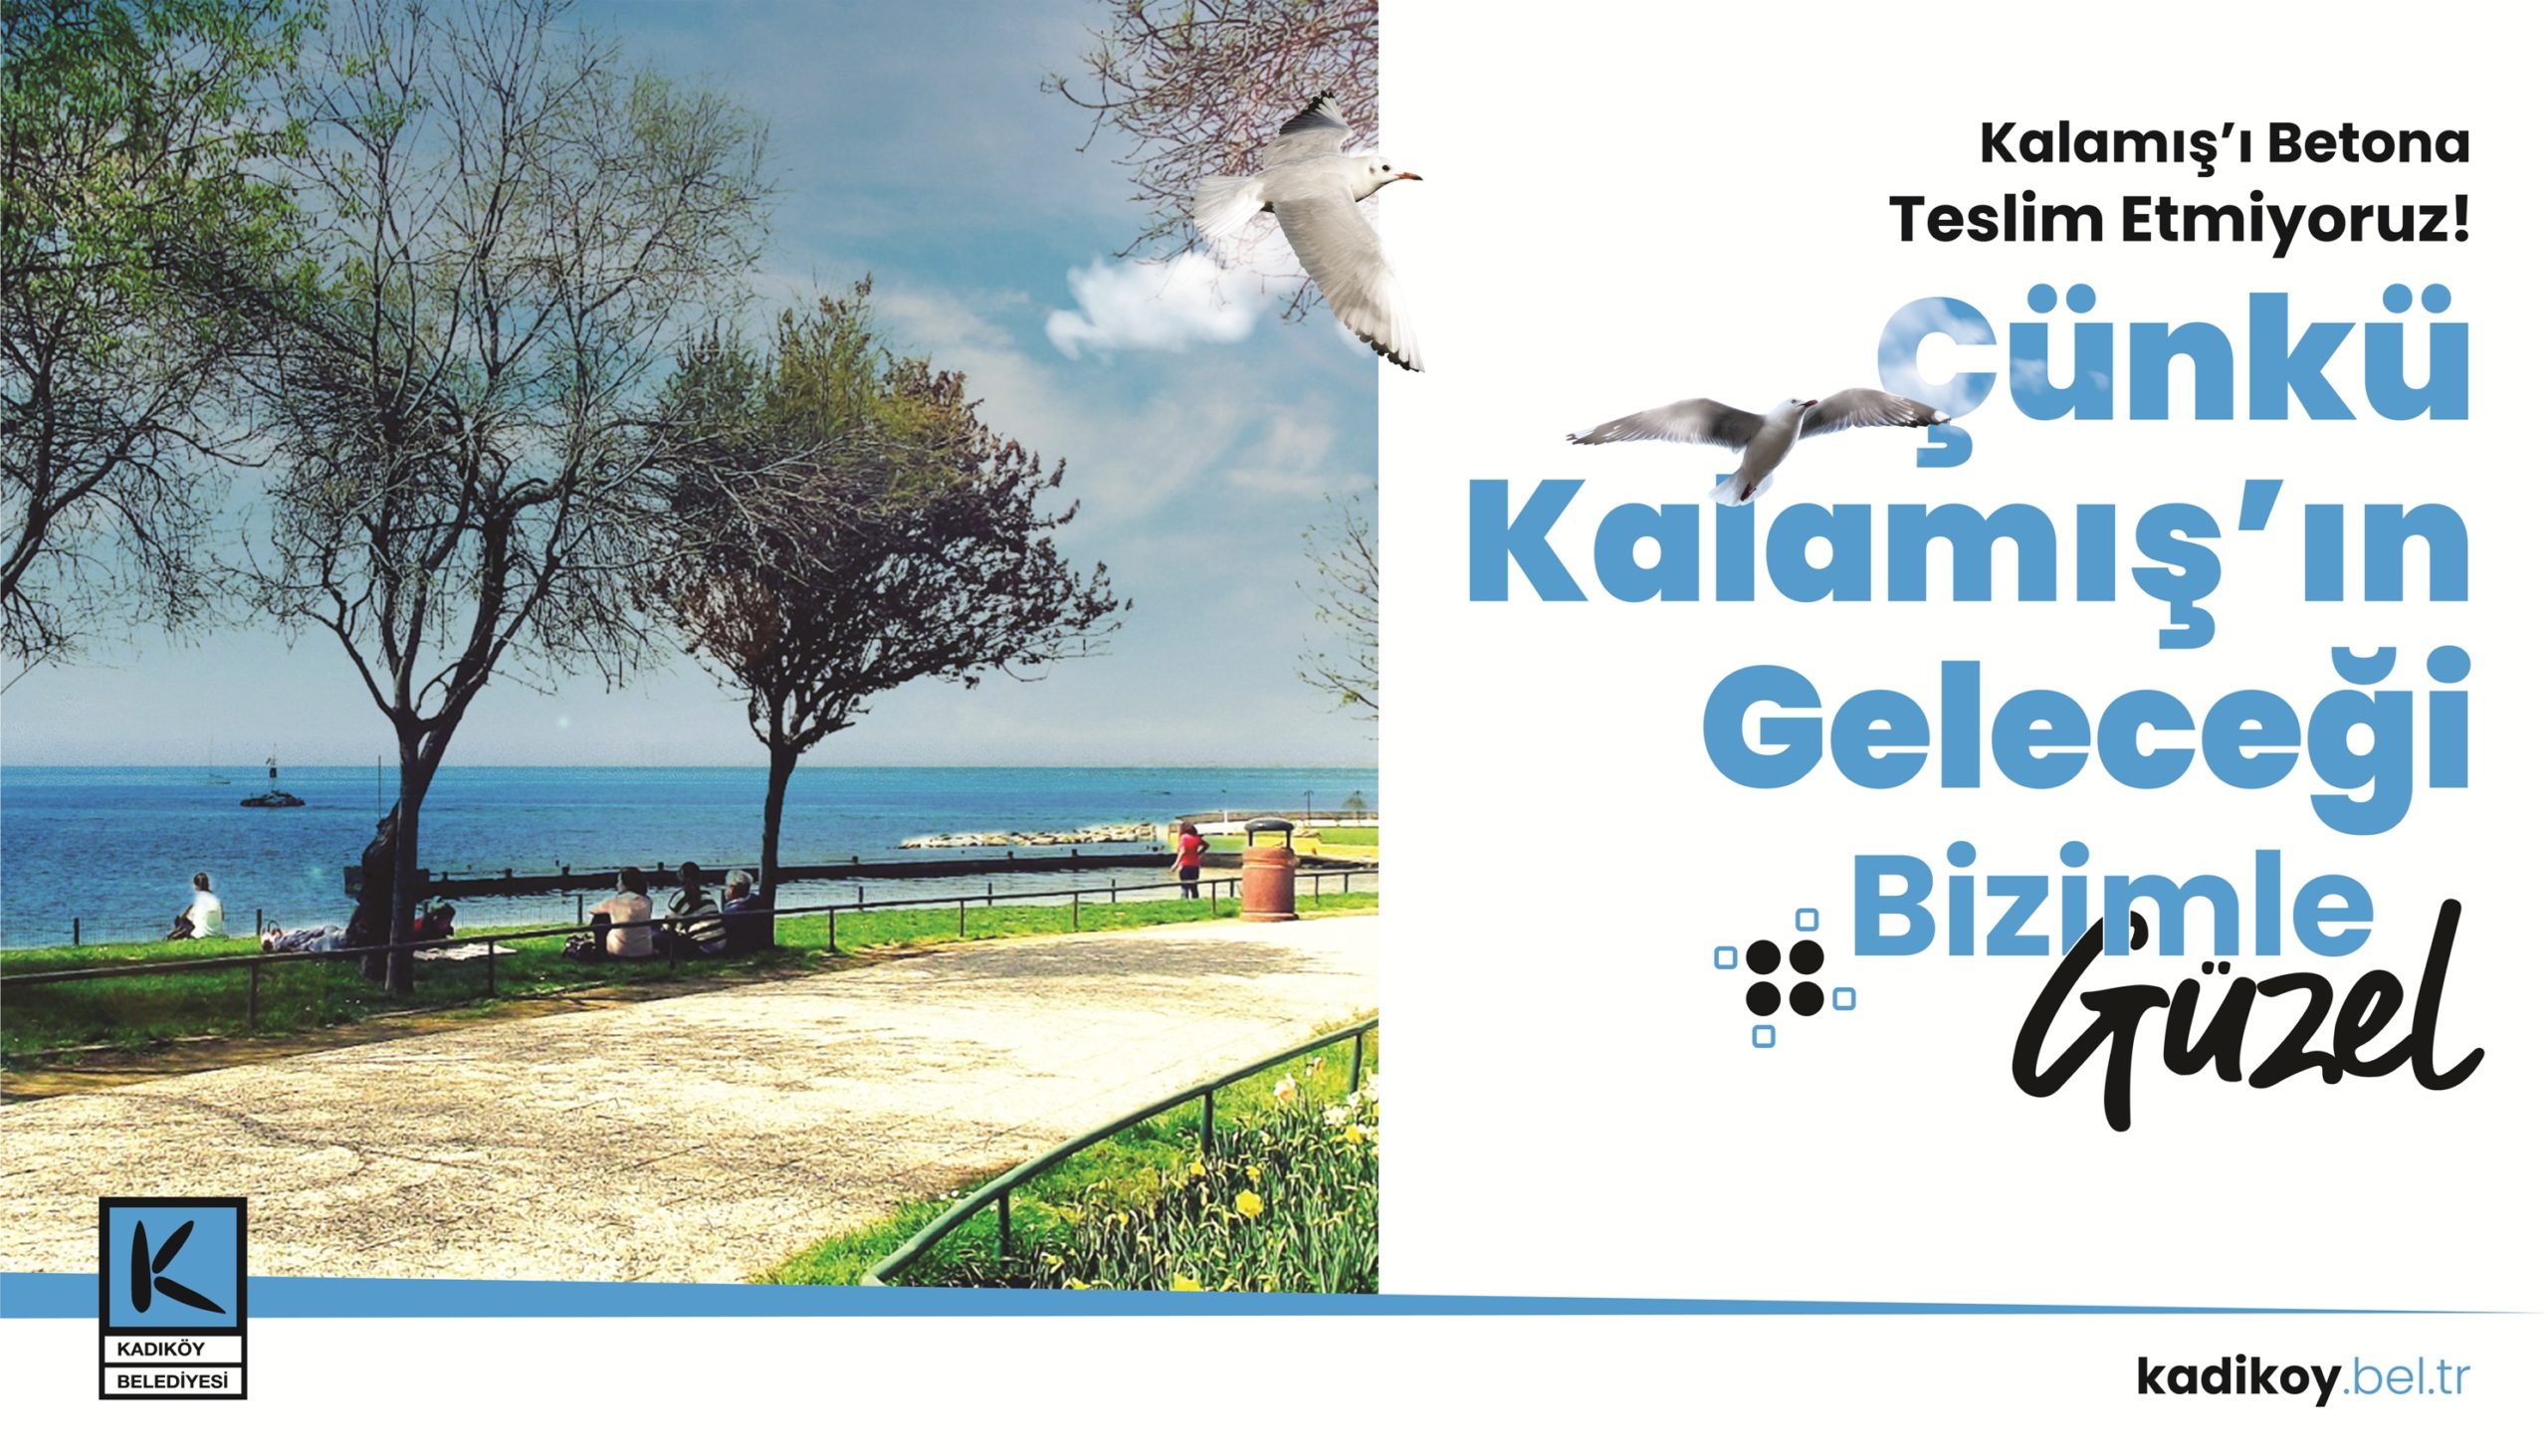  Kadıköy Belediyesi, Kalamış’ı Güzelleştirmeye Devam Ediyor